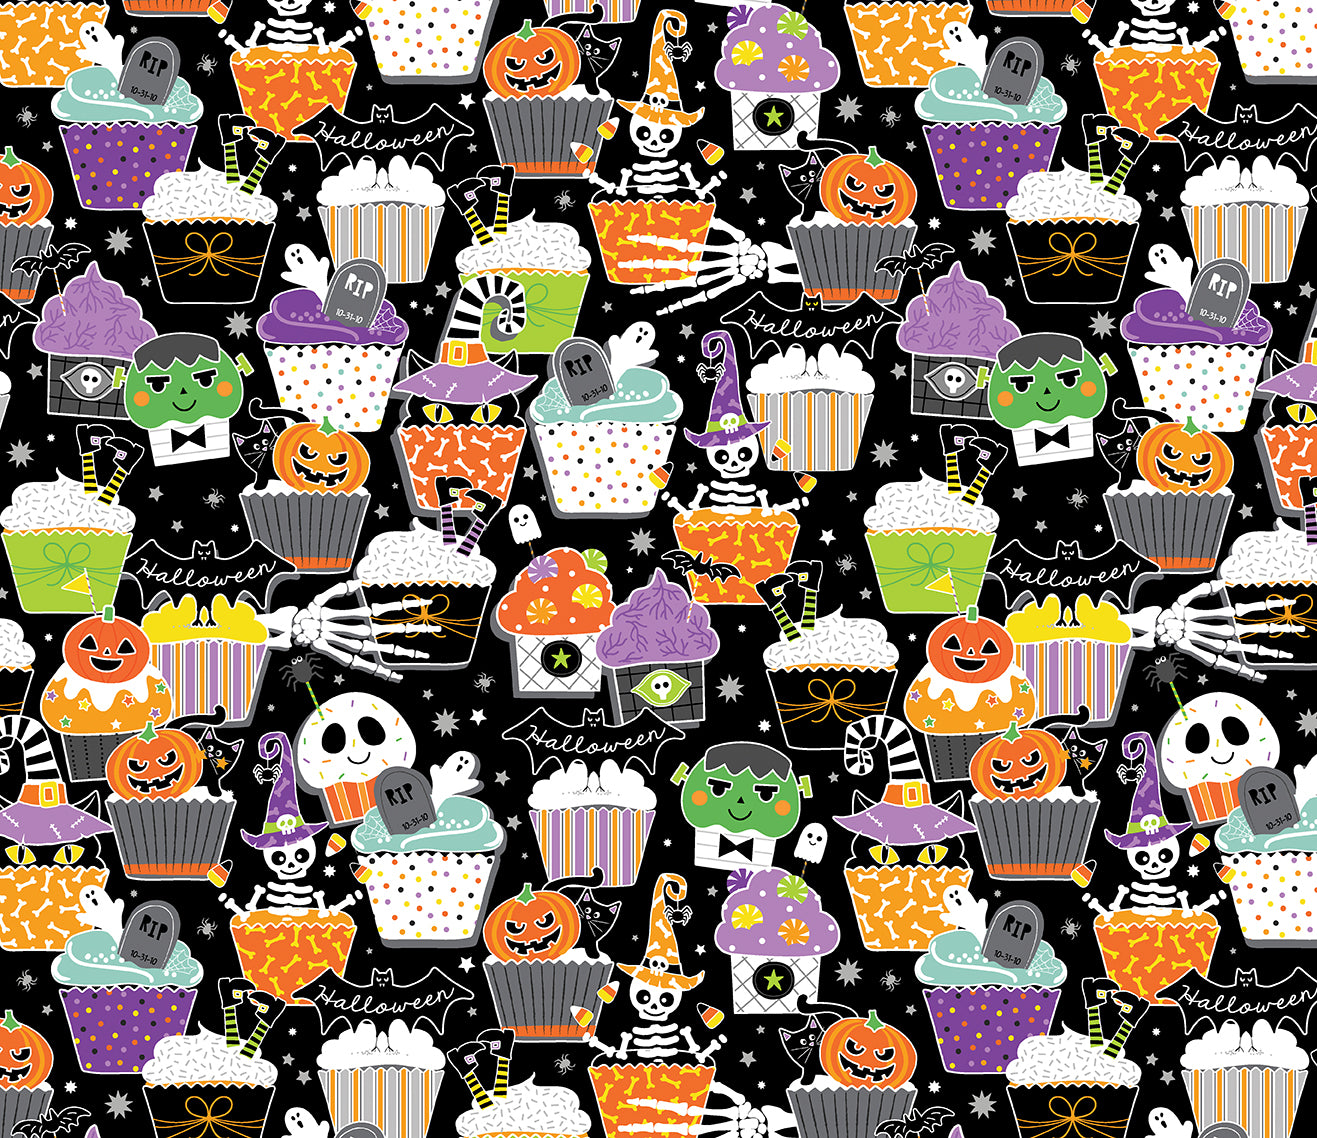 Halloween Beginner Quilt Kit - Chills & Thrills Glow in the Dark Halloween Cotton Fabric ABC & 123 Pattern